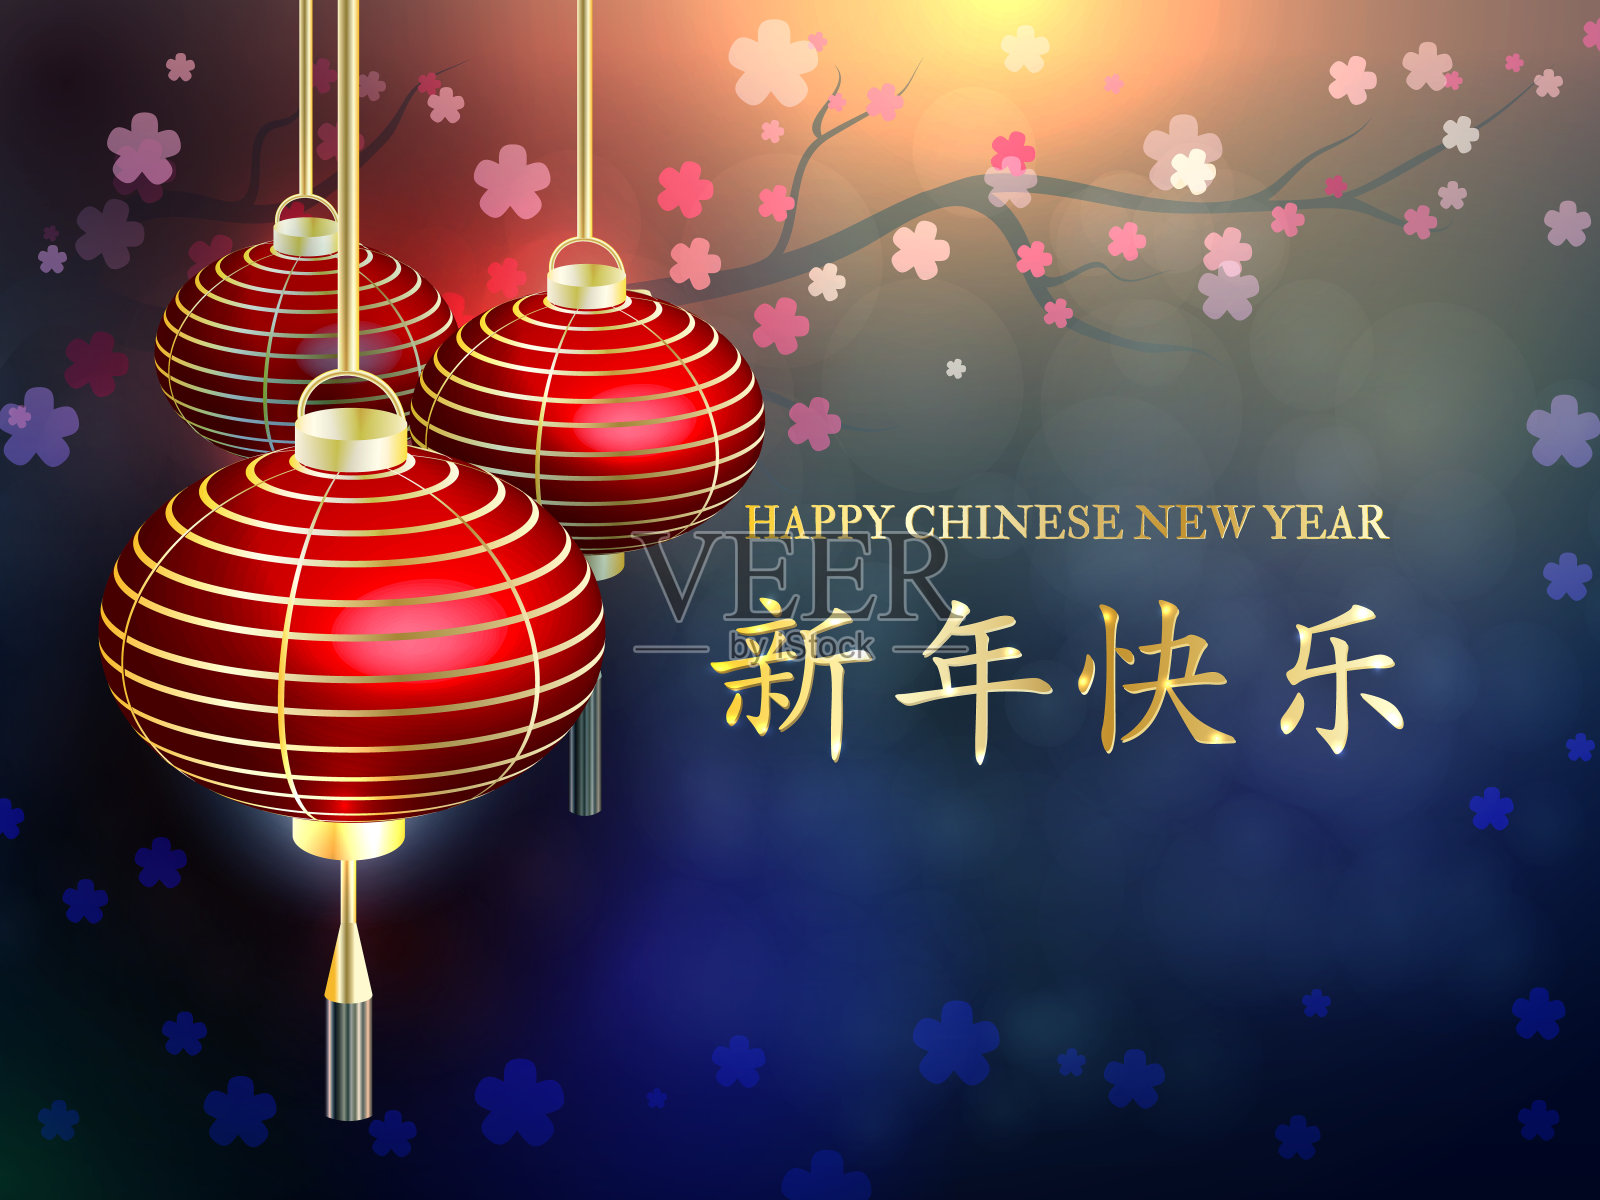 中国新年。新年快乐。明信片中国新年灯笼插画图片素材